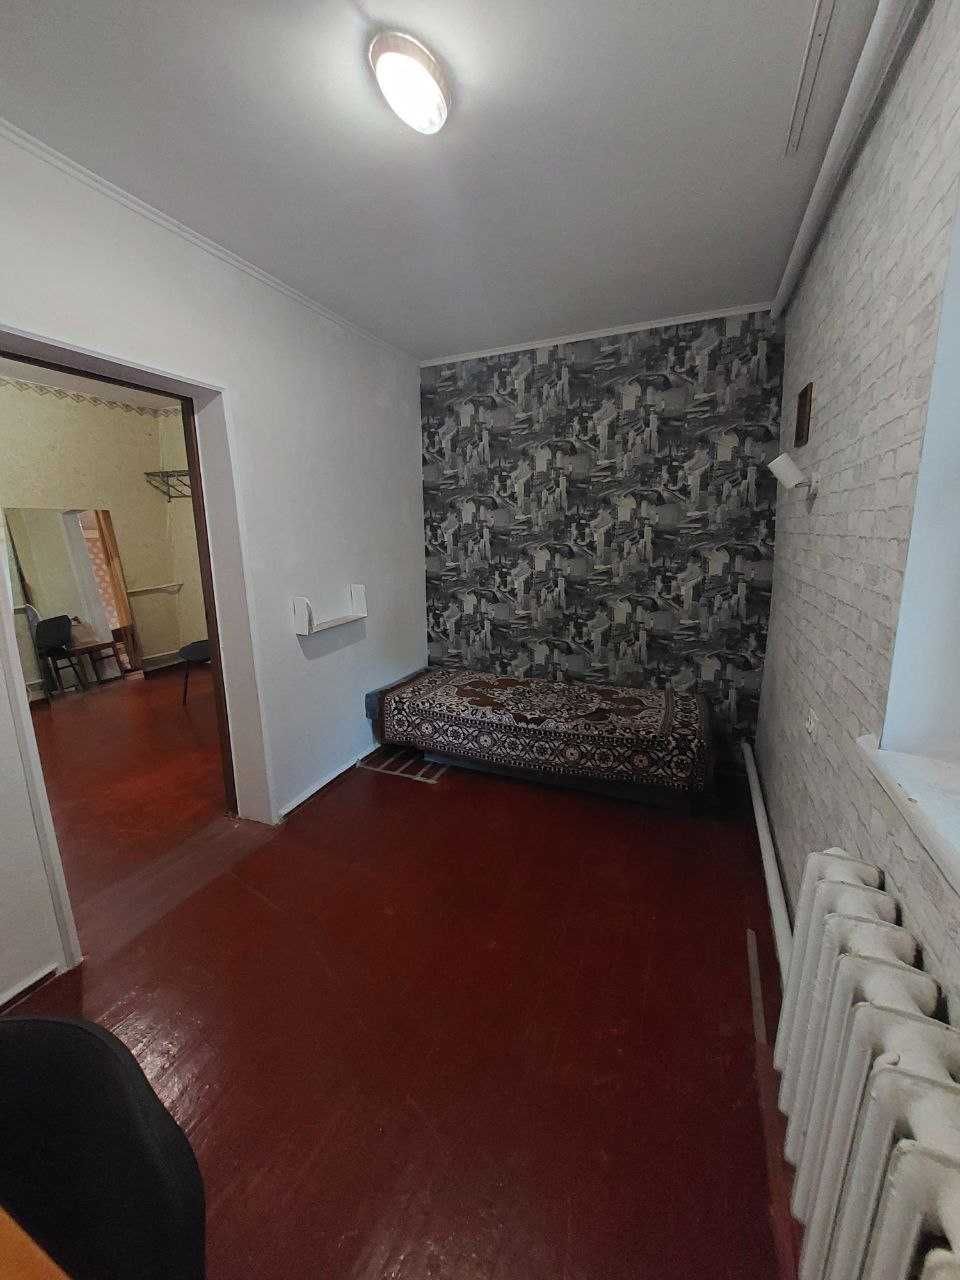 Продам 3-комнатный  дом в Одинковке до Самарского разлива  200 м.